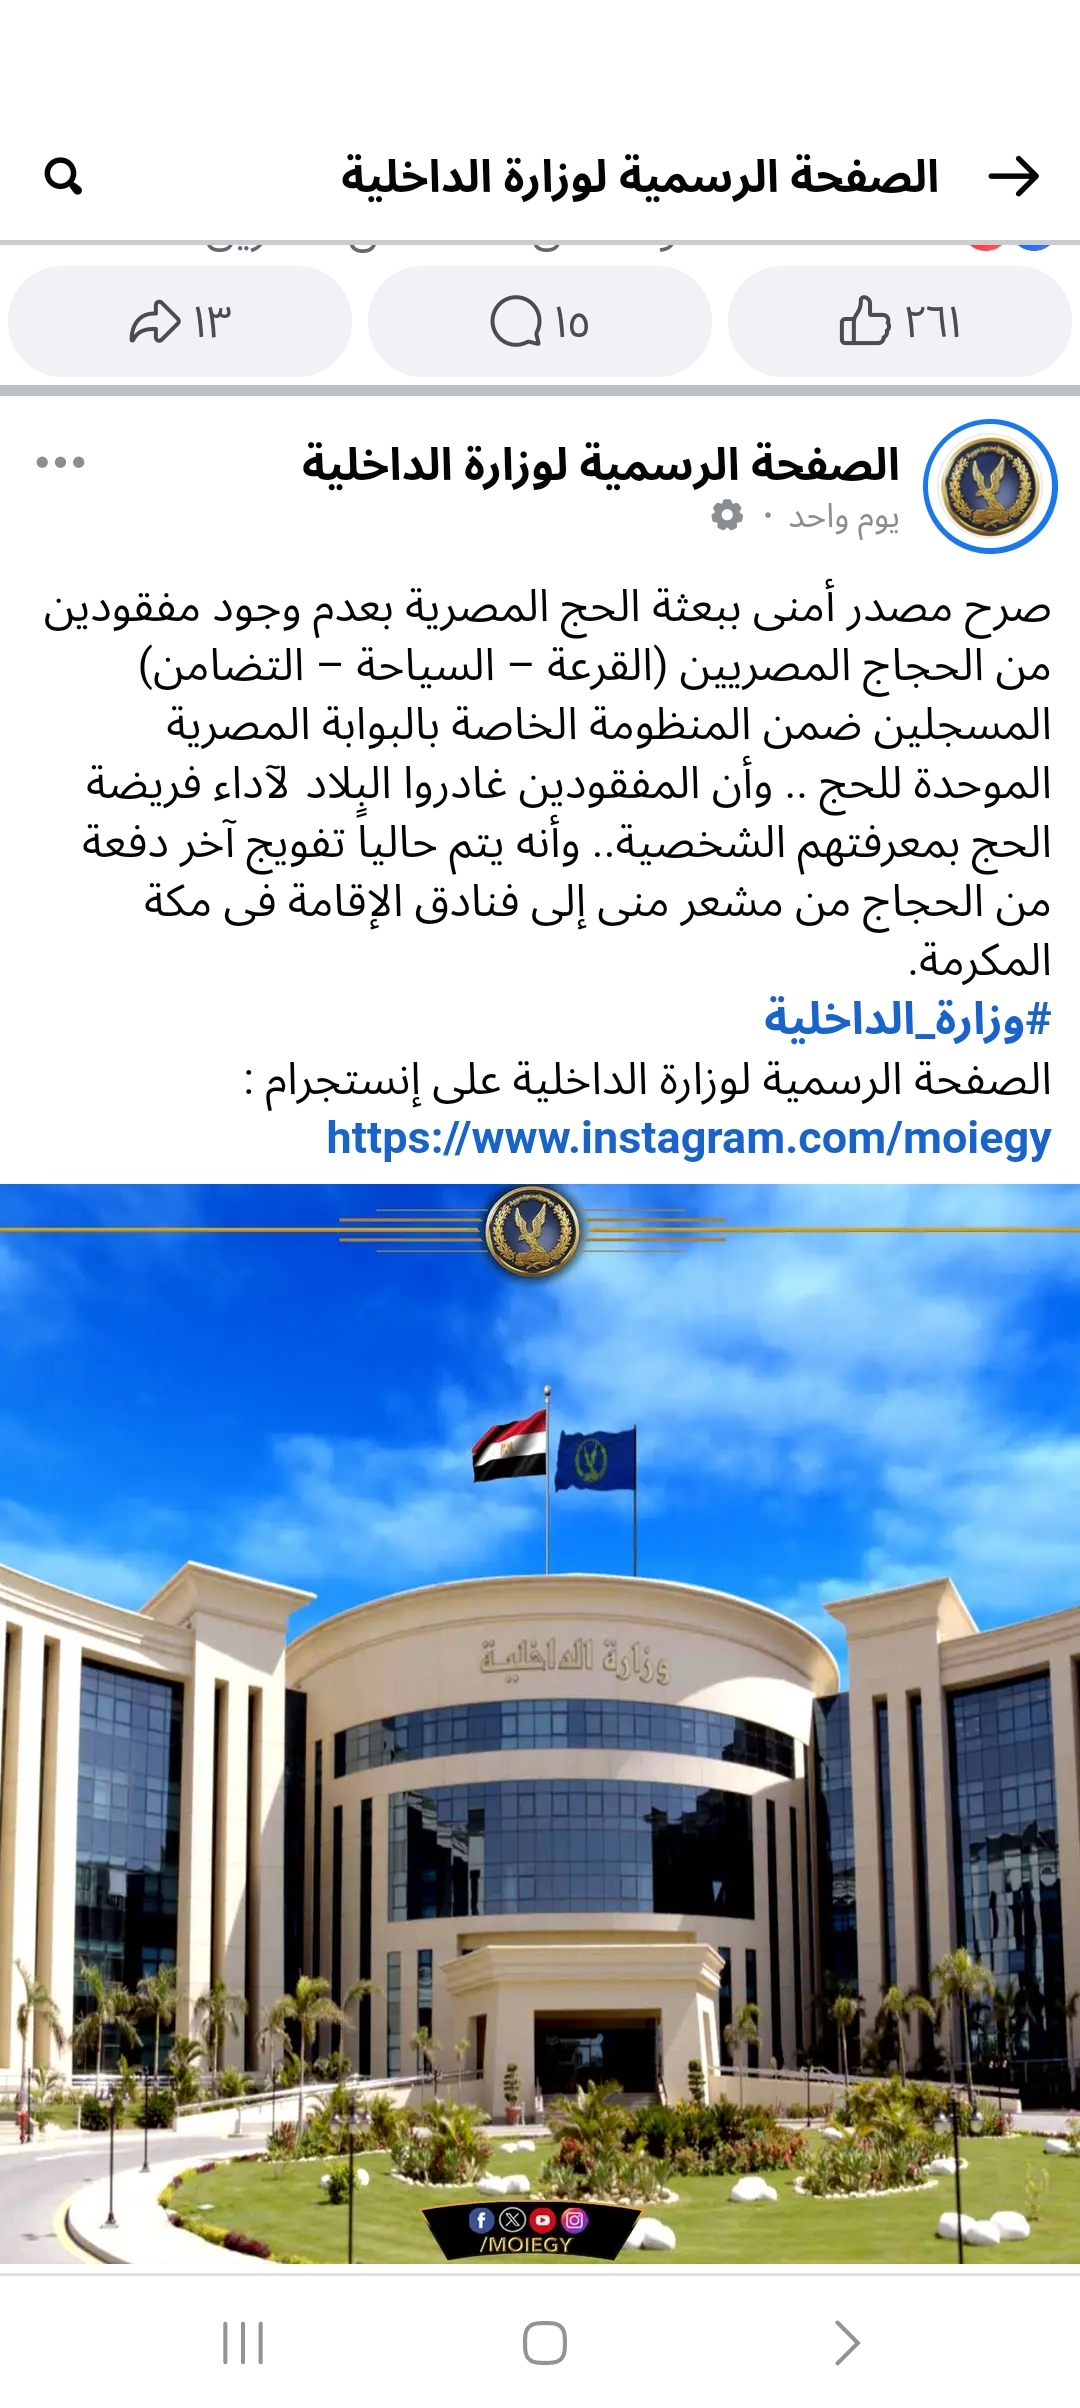 وزارة الداخلية المصرية : كافة الأشخاص المذكورين في التواصل غير مسجلين حجاج نظاميين